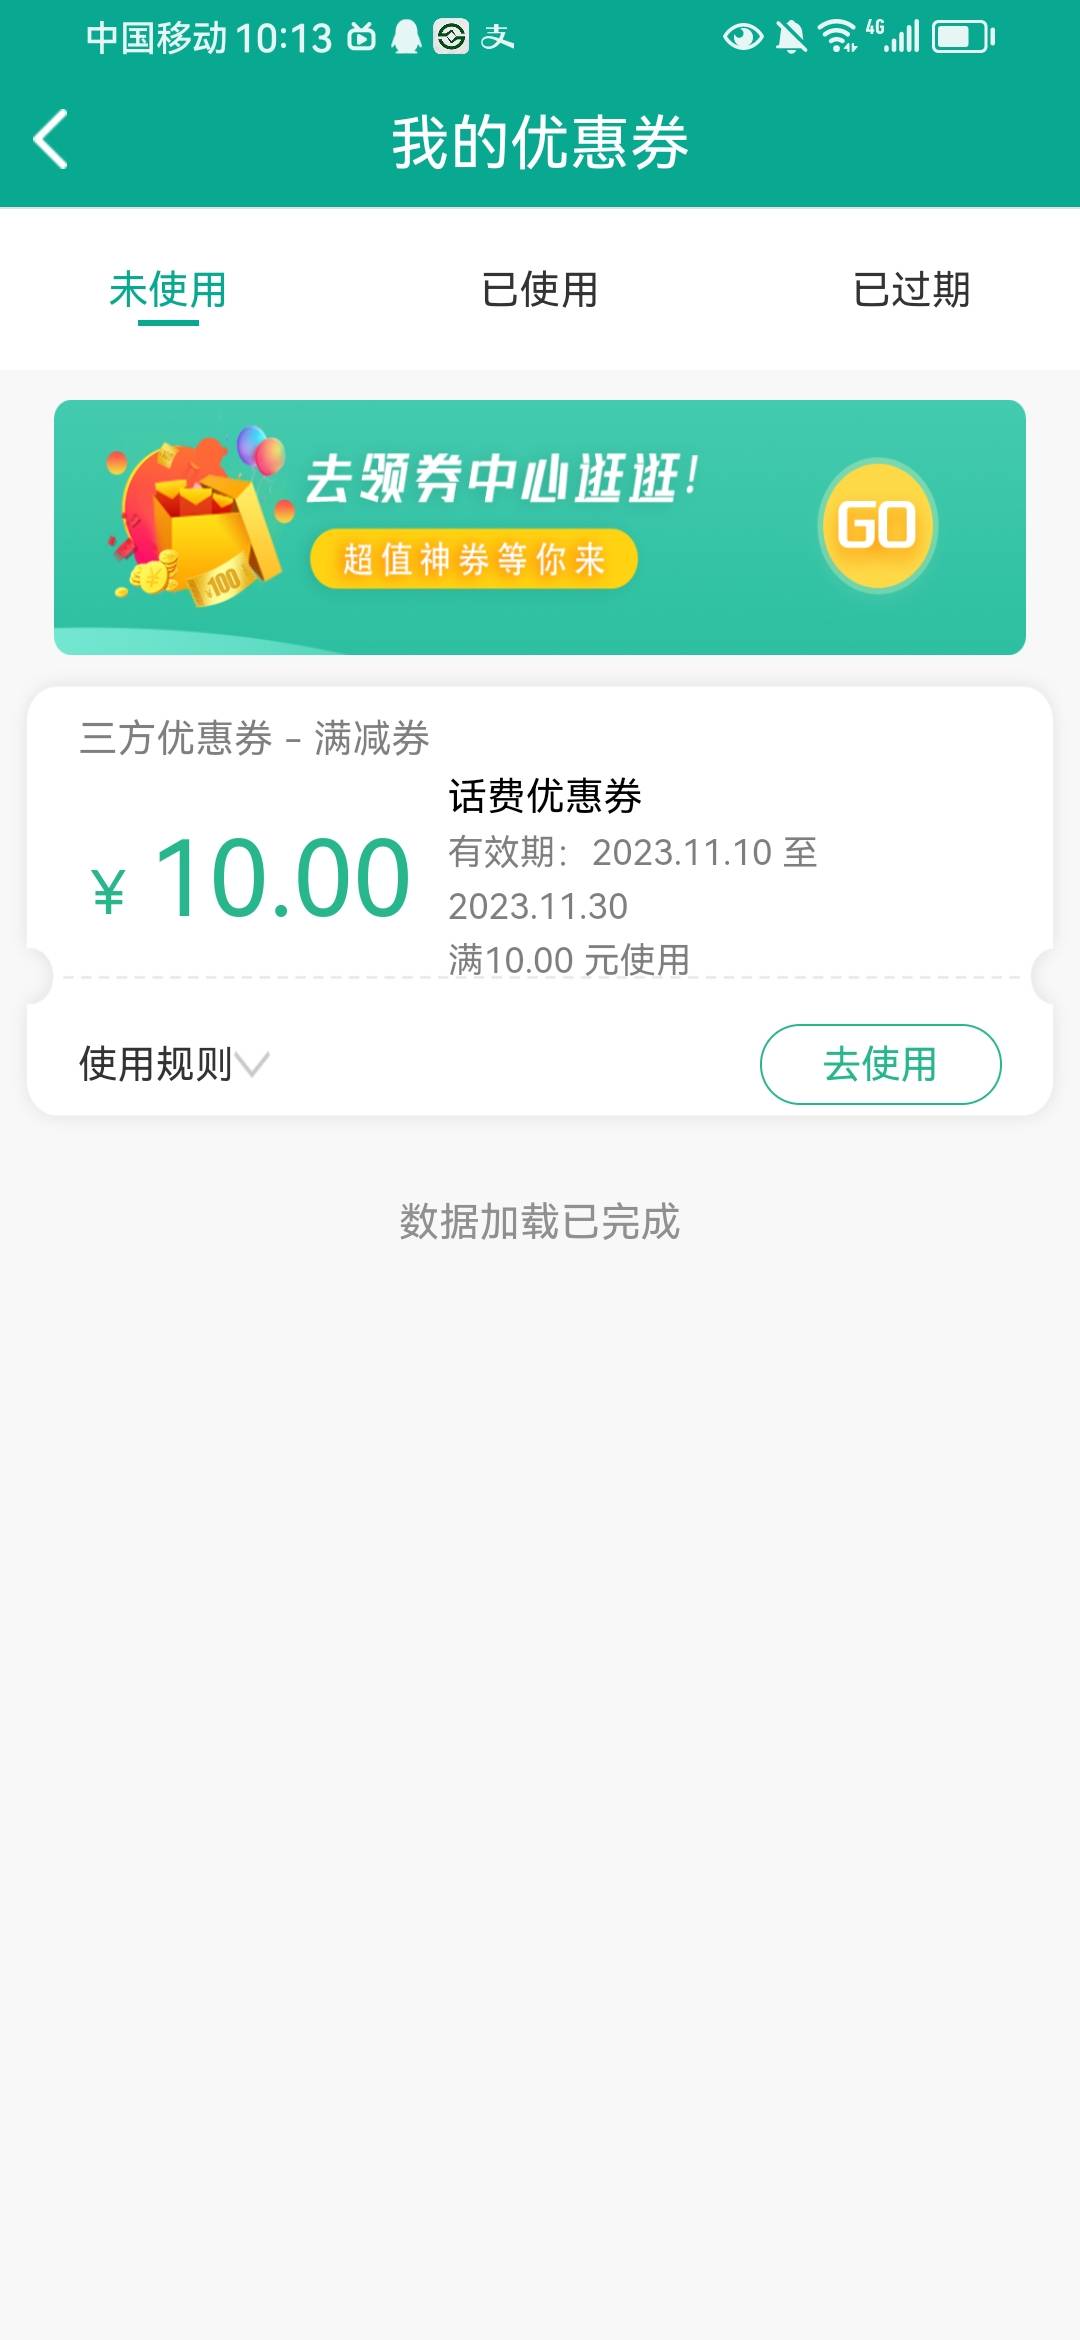 [福利在线]陕西信合app登录首页弹窗，登录有礼抽话费优惠券